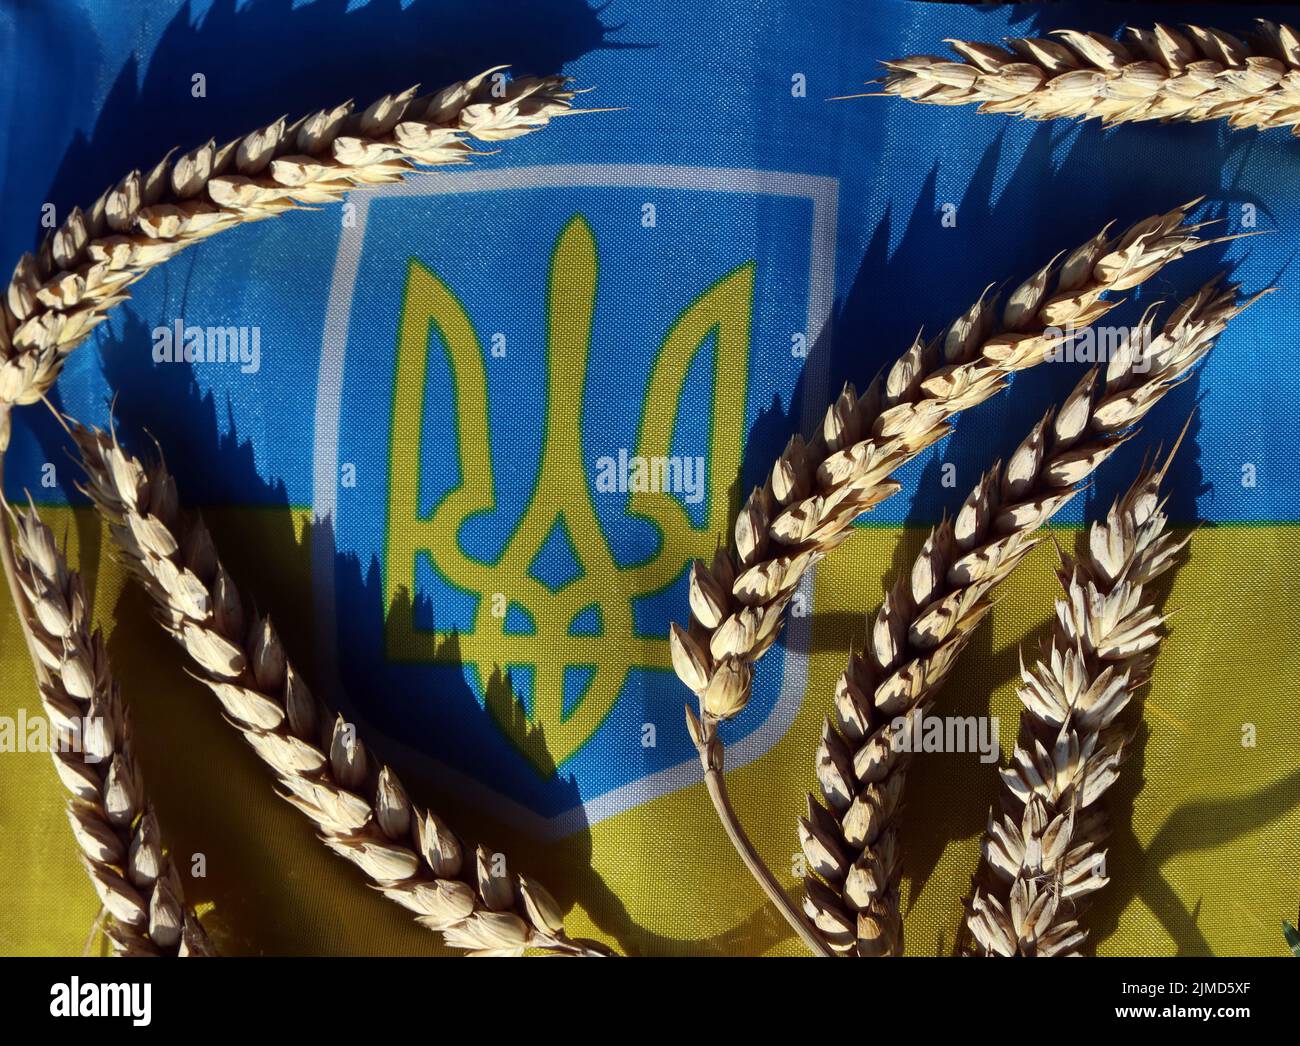 Unter der Flagge der Ukraine mit Getreidekörnern werden landwirtschaftliche Probleme, verringerte Getreideexporte und steigende Lebensmittelpreise wie Brot und Futtermittel hervorgehoben Stockfoto